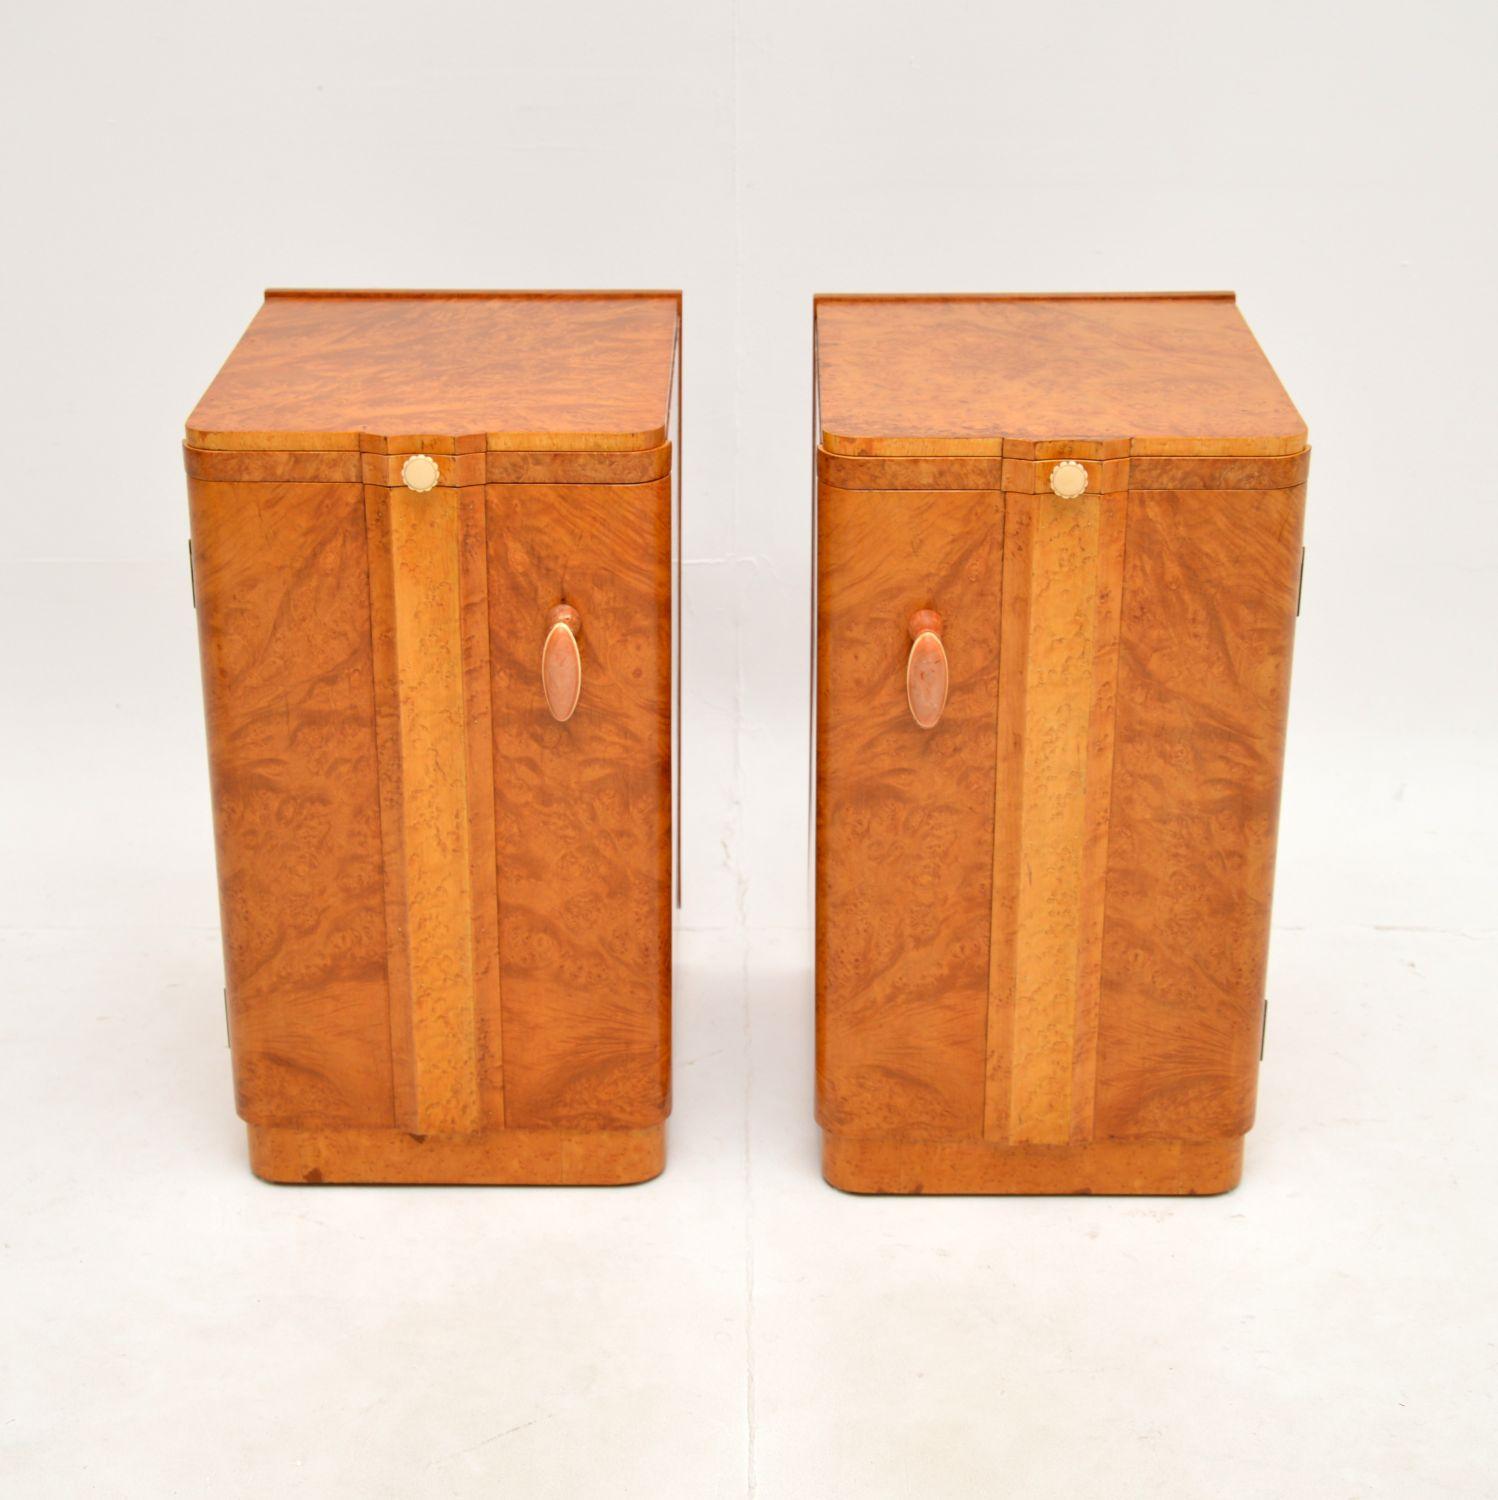 Ein atemberaubendes Paar Nachttische aus Wurzelnussholz im Art Deco-Stil. Sie stammen aus den 1920-30er Jahren und wurden in England von Epstein hergestellt.

Die Qualität ist hervorragend, sie sind wunderschön gestaltet und haben schöne originale